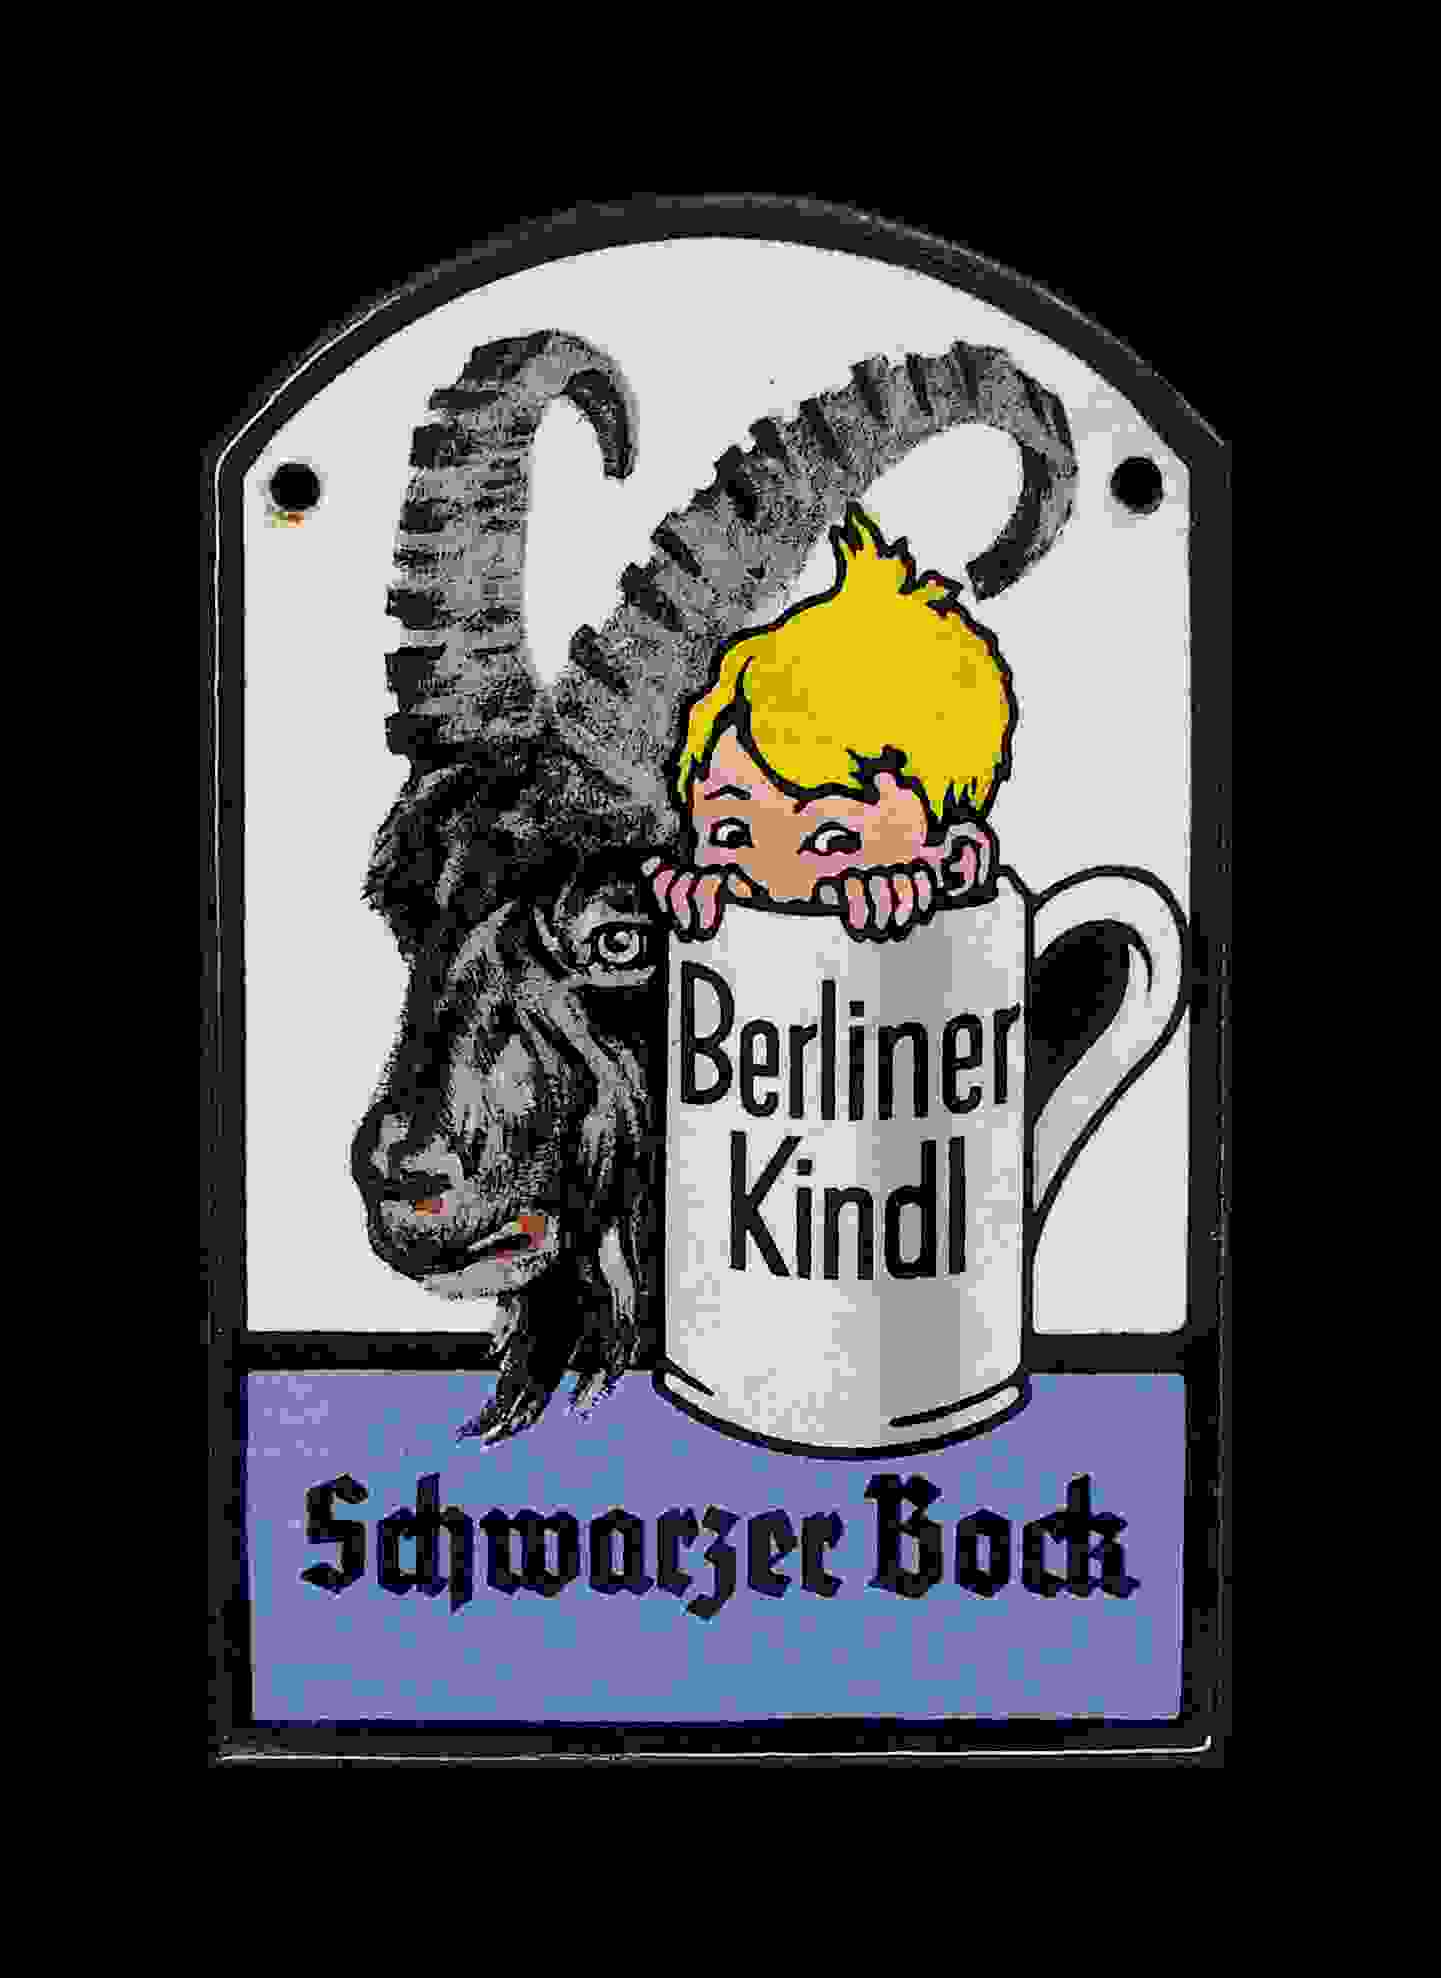 Berliner Kindl Schwarzer Bock Zapfhahnschild 